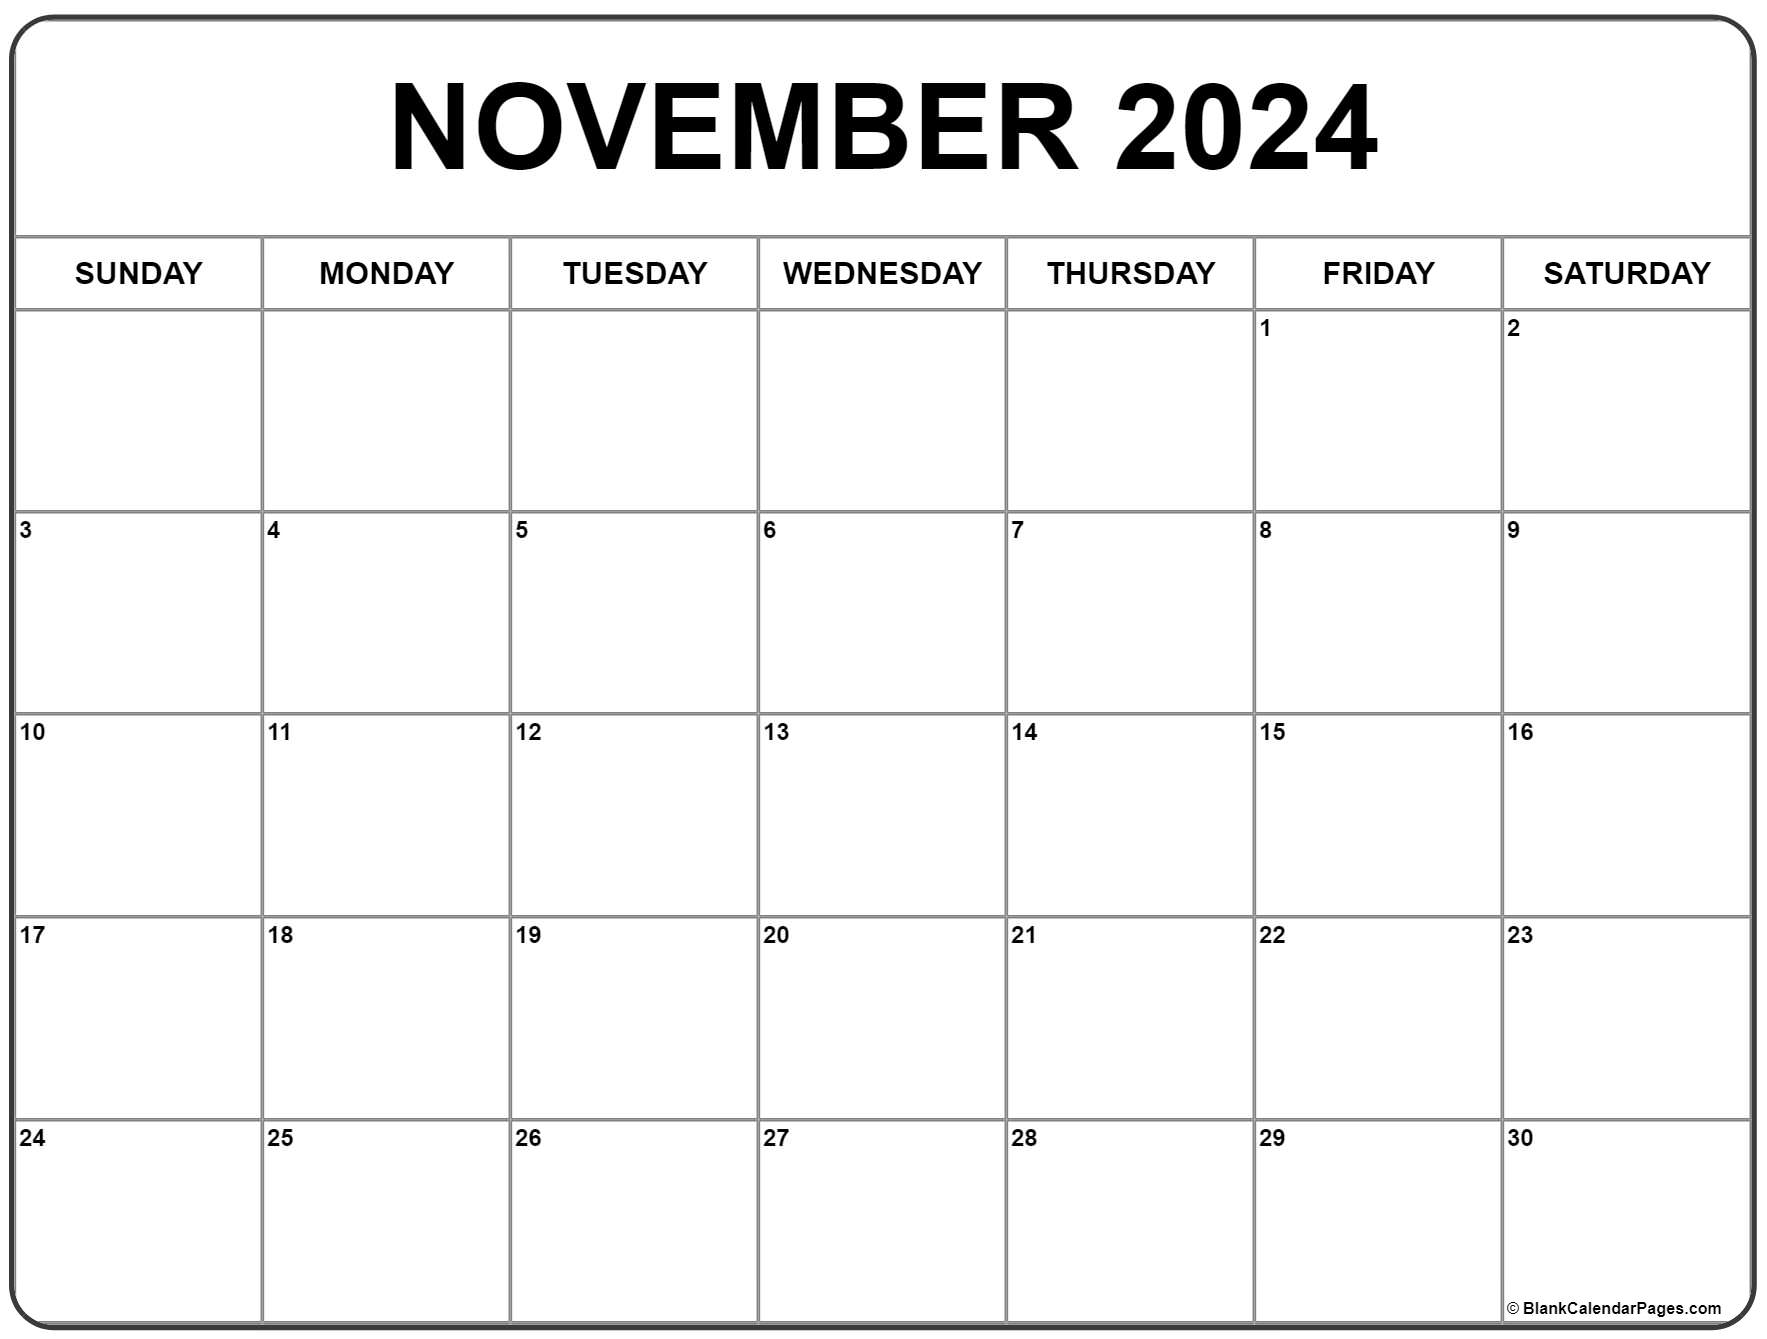 November 2022 Calendar Printable November 2022 Calendar | Free Printable Calendar Templates